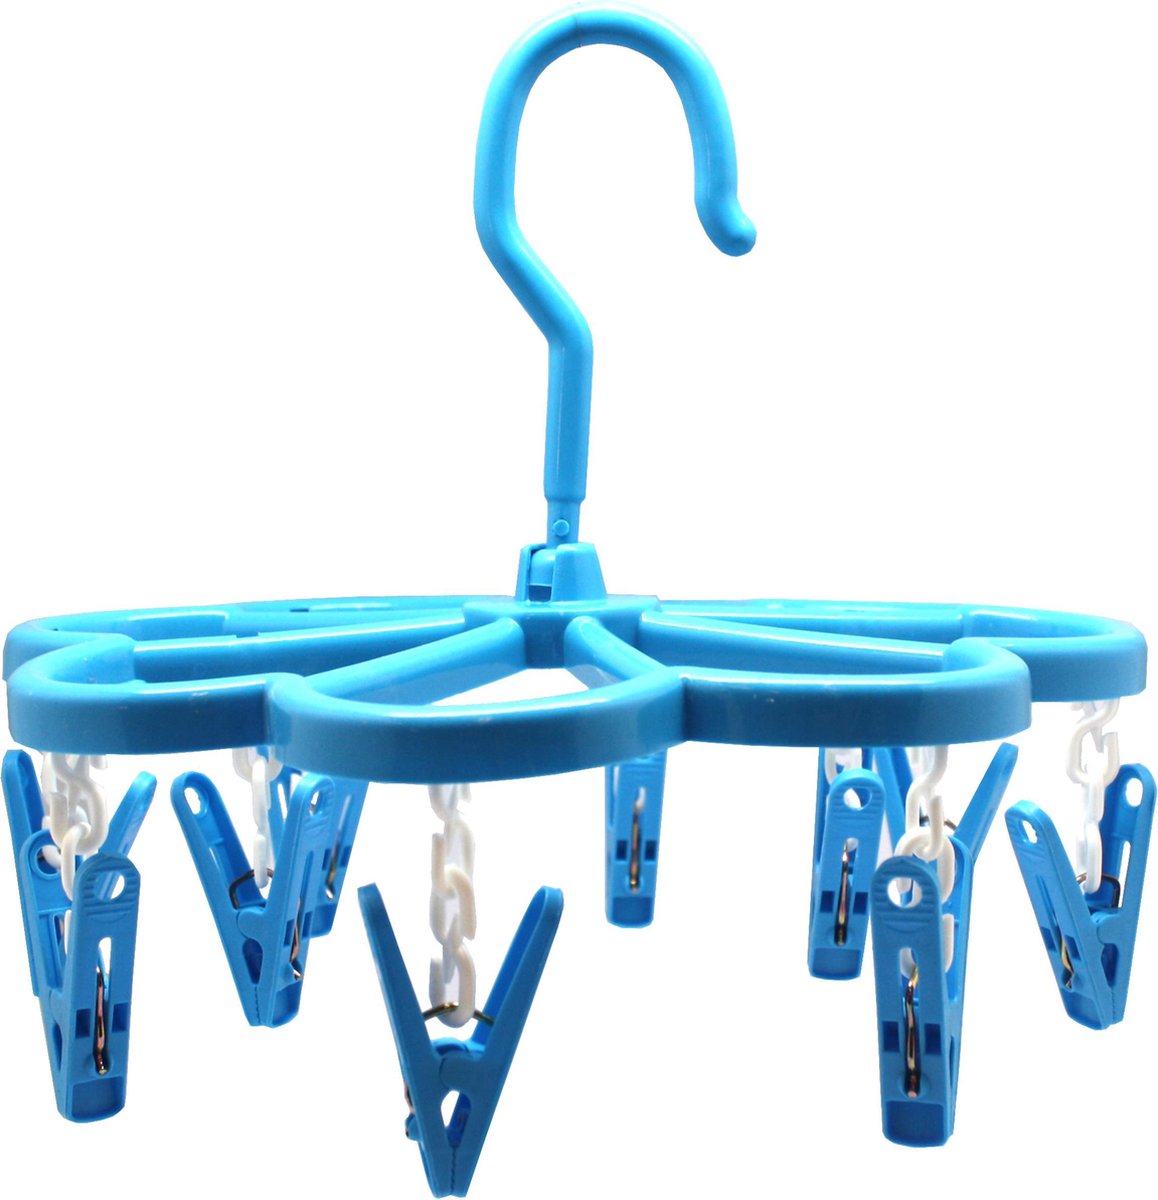 GS hangend wasrek met 10 knijpers - Droogcarrousel / Droogrek inklapbaar - Blauw